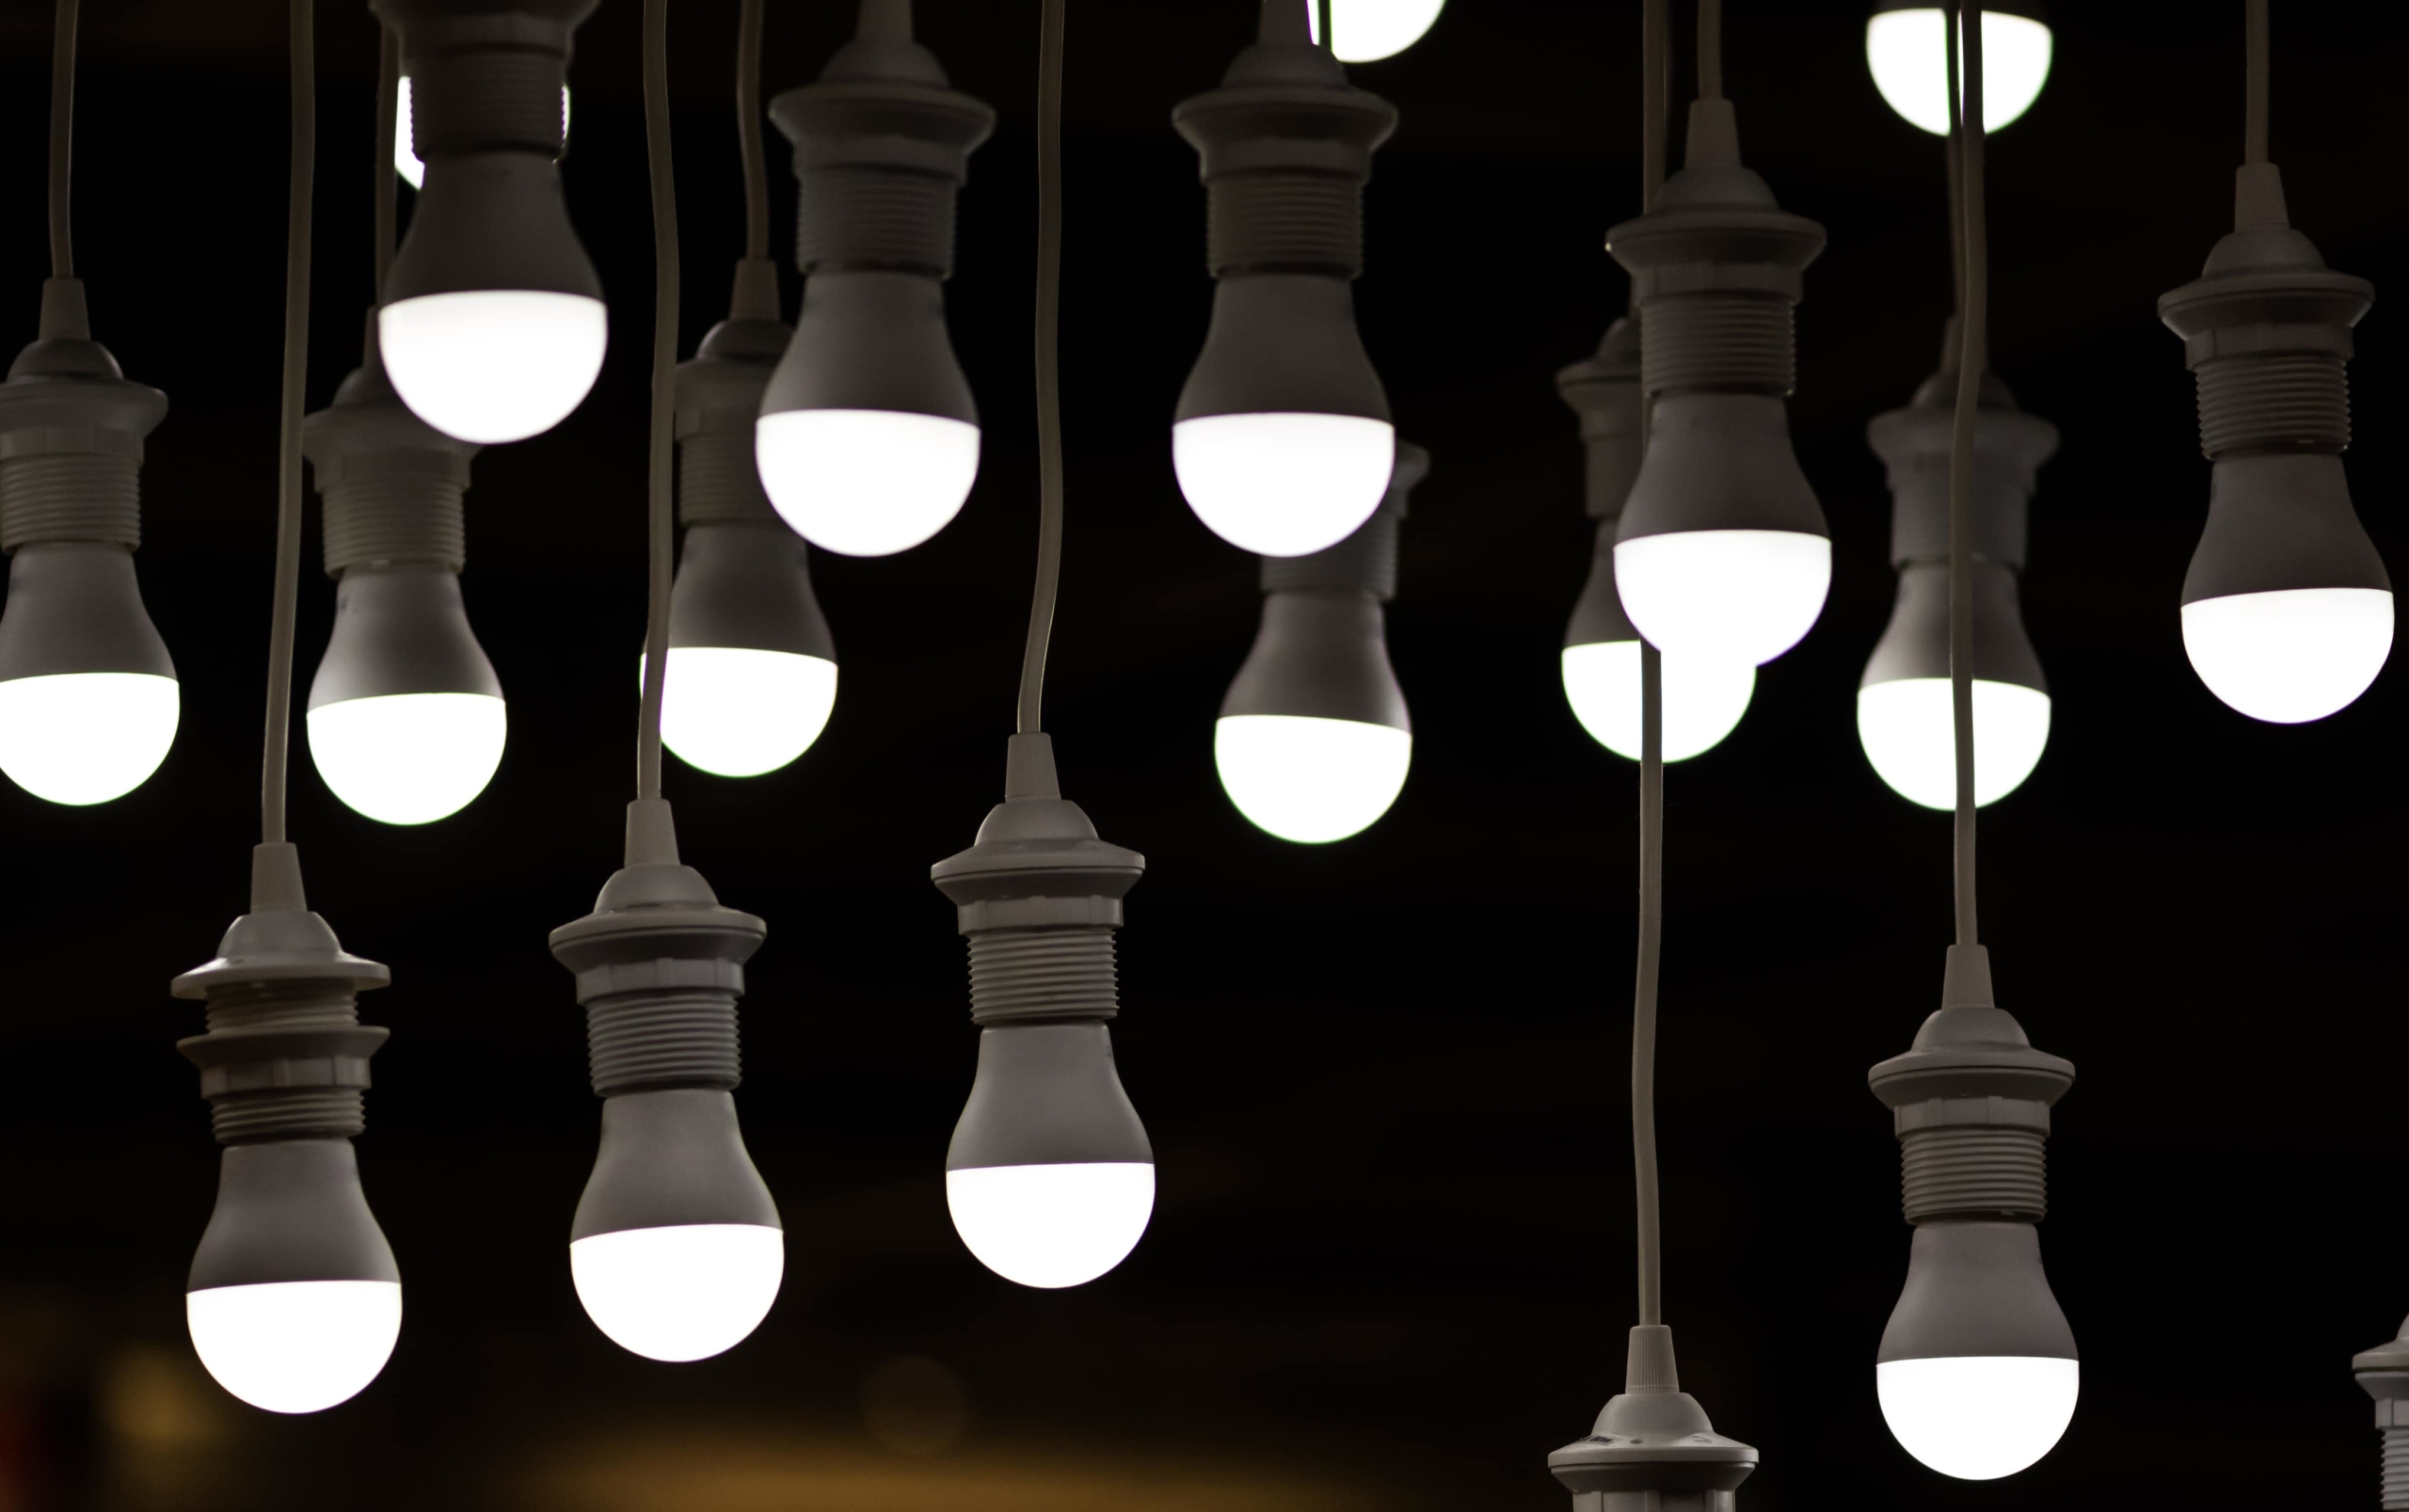 Мигащи LED светлини: често срещани причини и ефективни решения